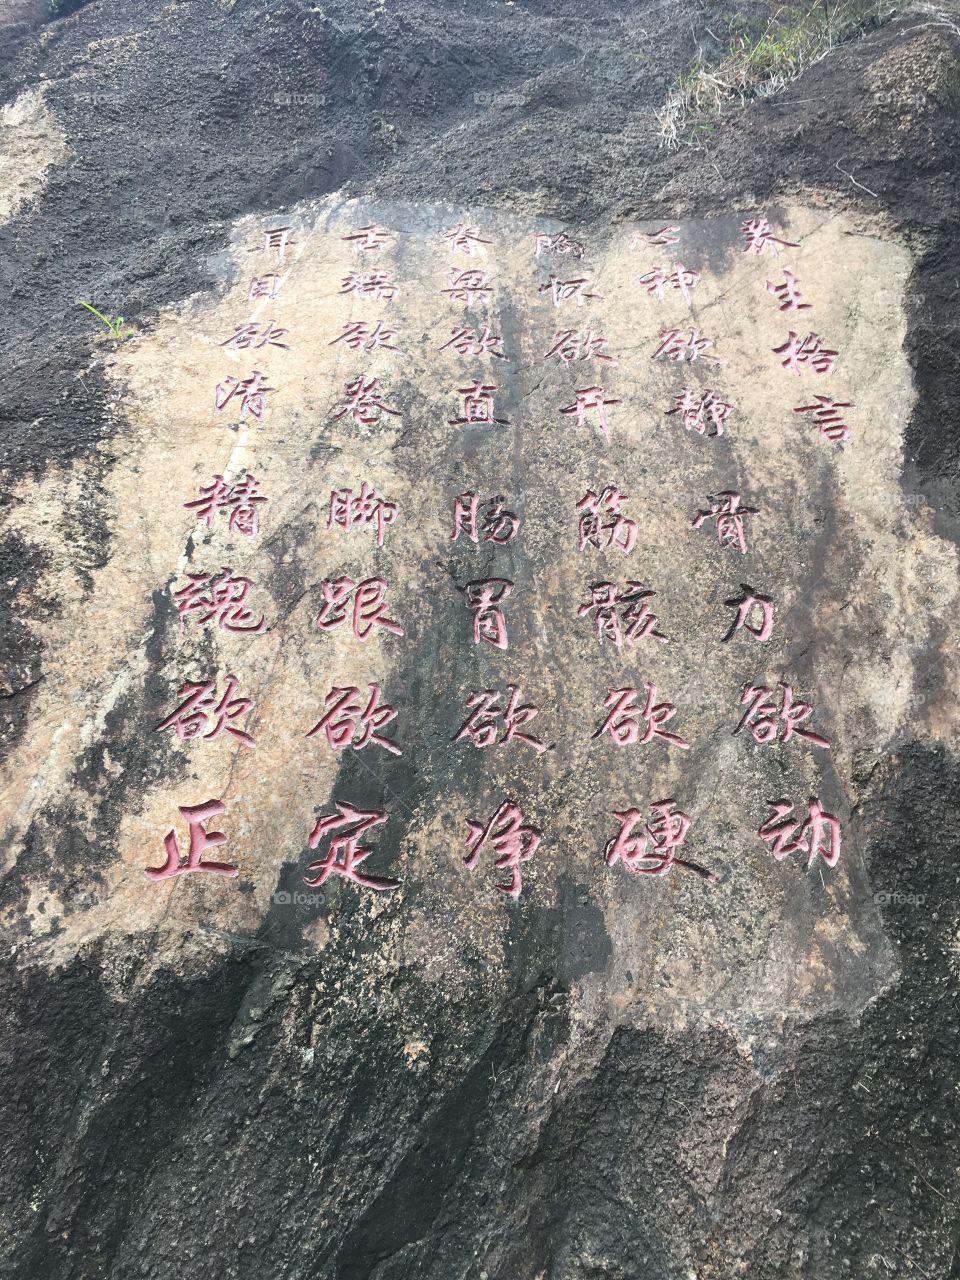 Chinese Writing at Nanshan Mountain in Shenzhen, China